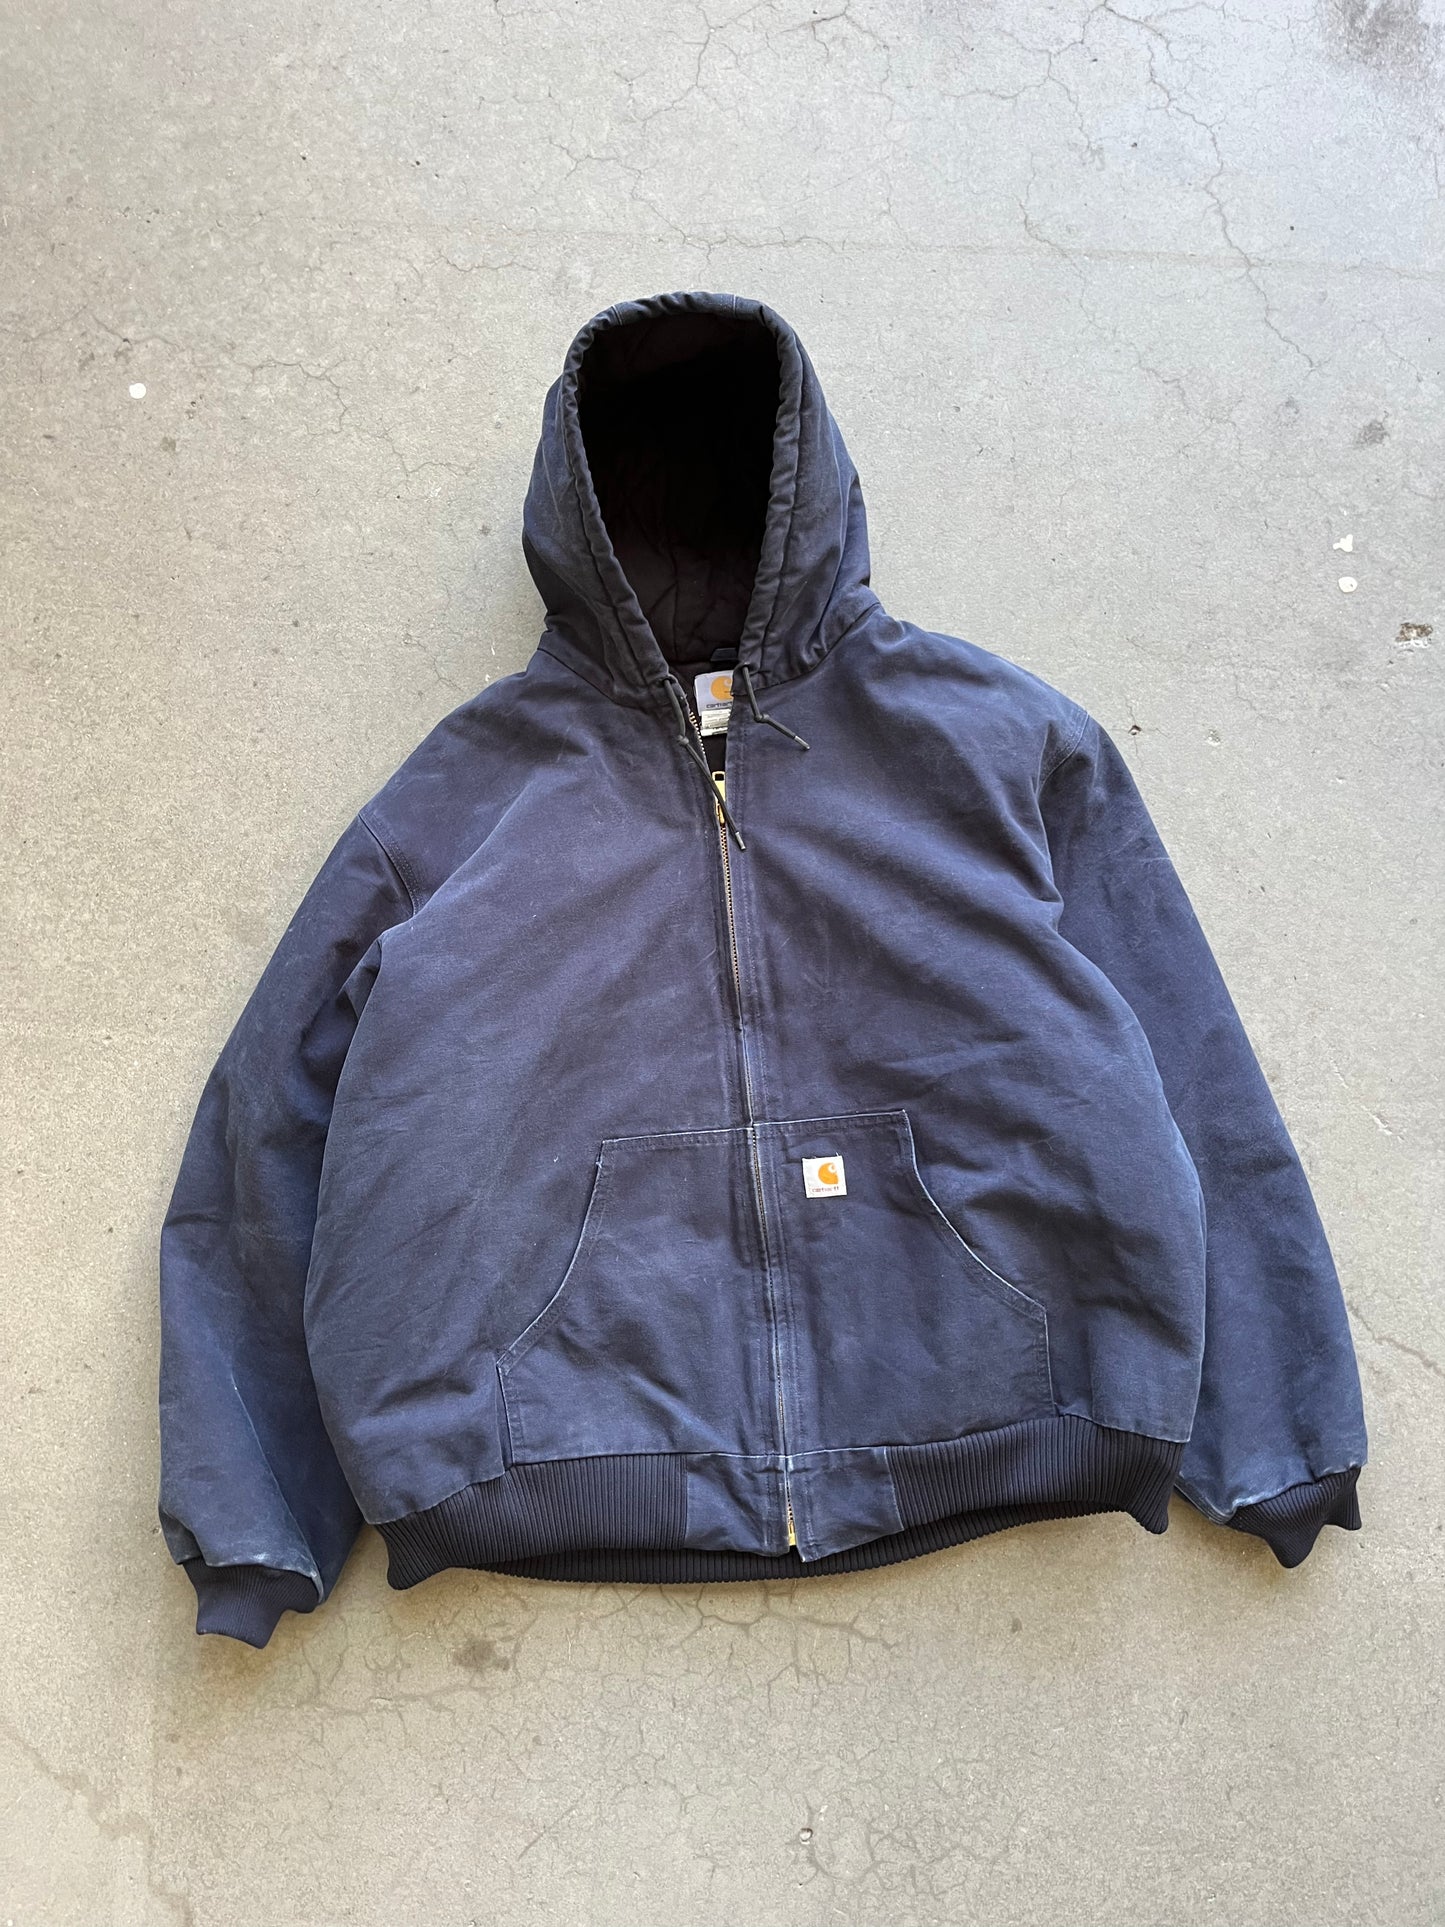 (XXL) Vintage Carhartt Navy Blue Hooded Jacket